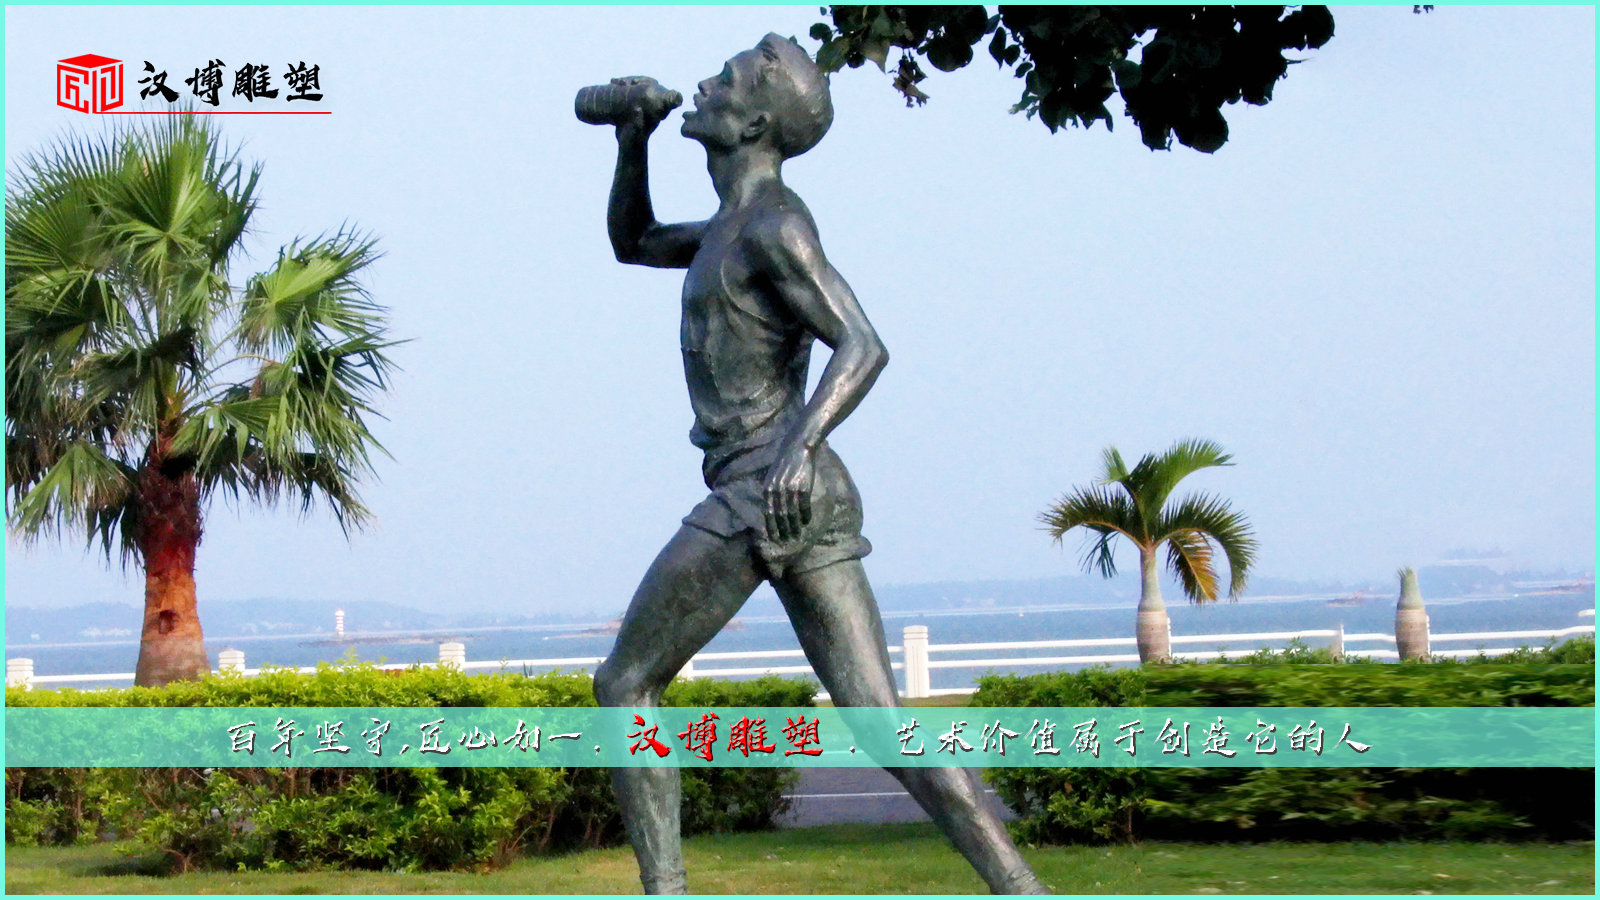 男子铜雕,跑步雕像,运动景观雕塑